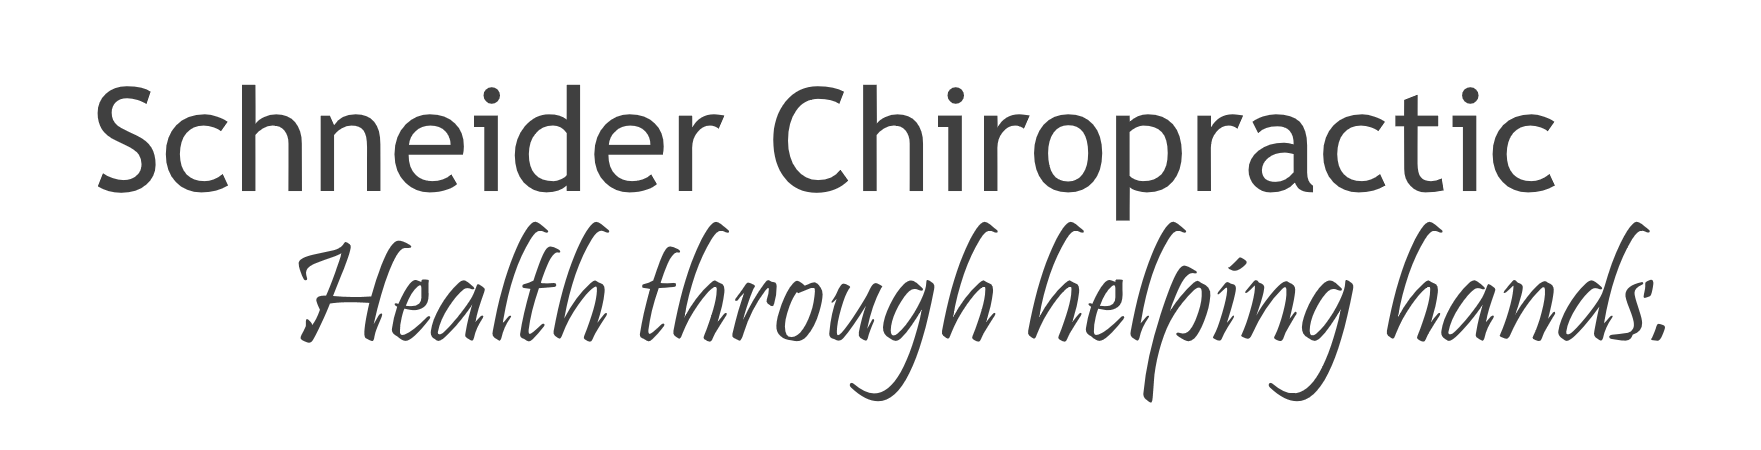 Schneider Chiropractic Davenport Iowa